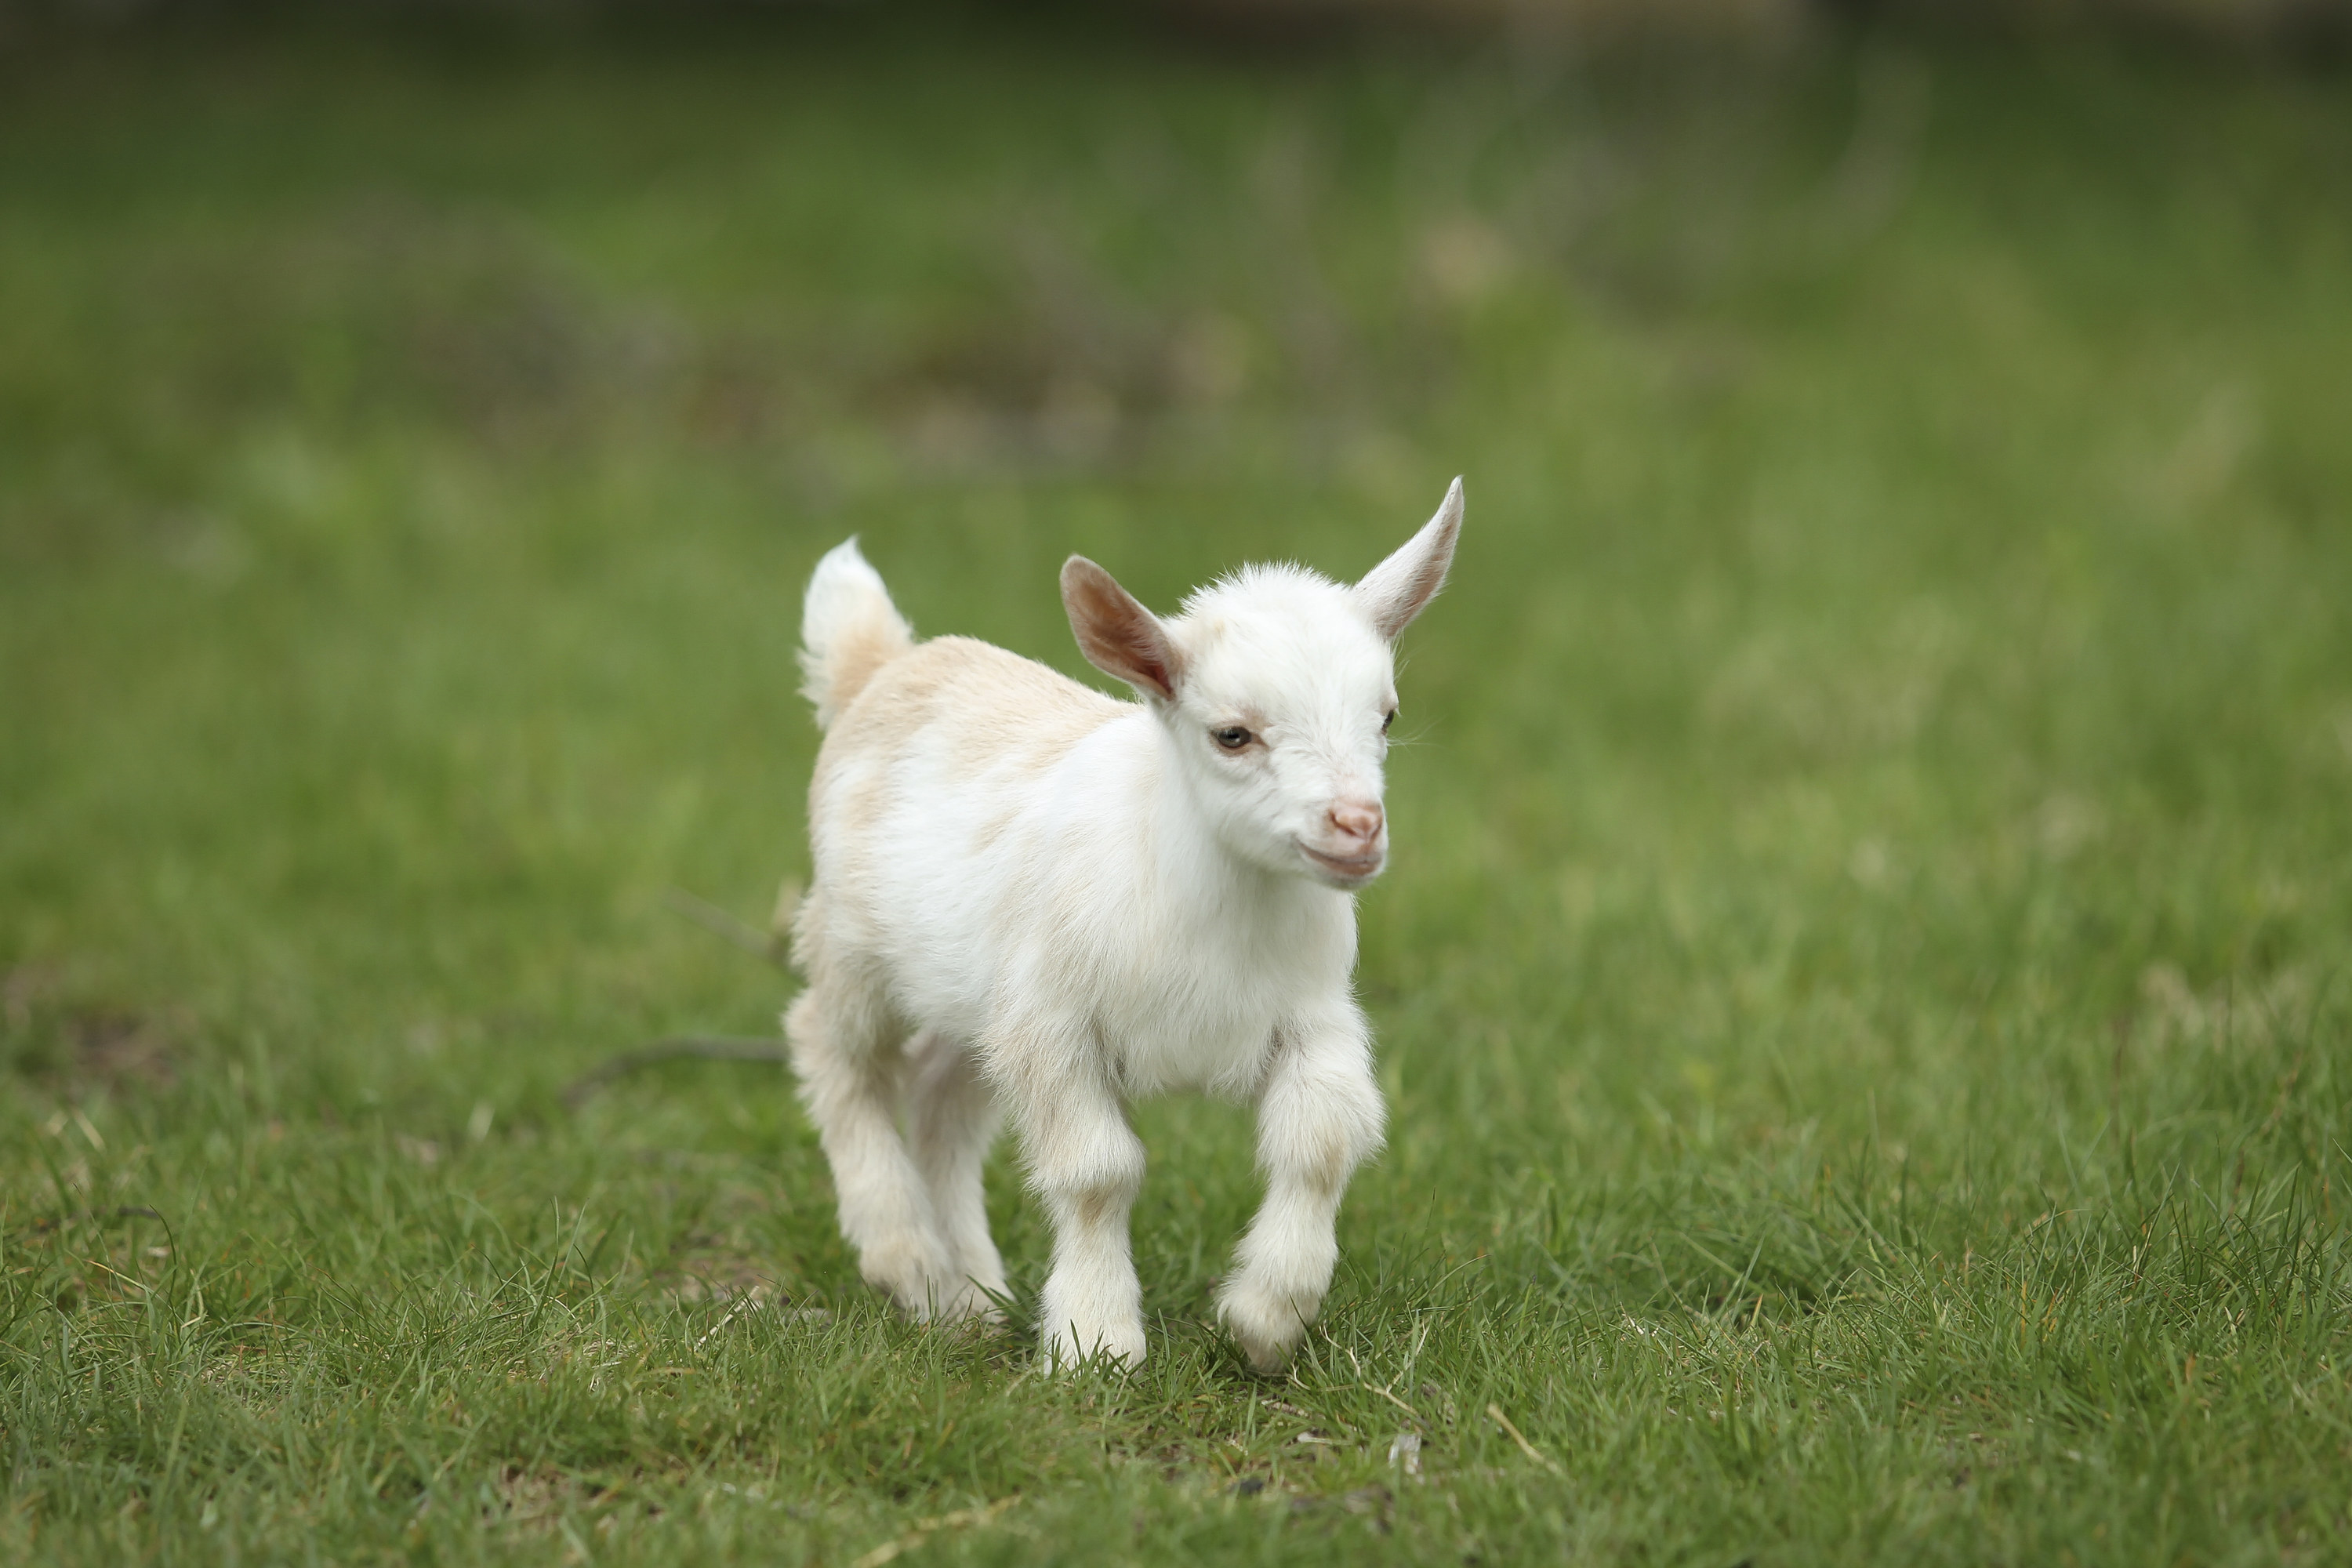 baby goat running through a field